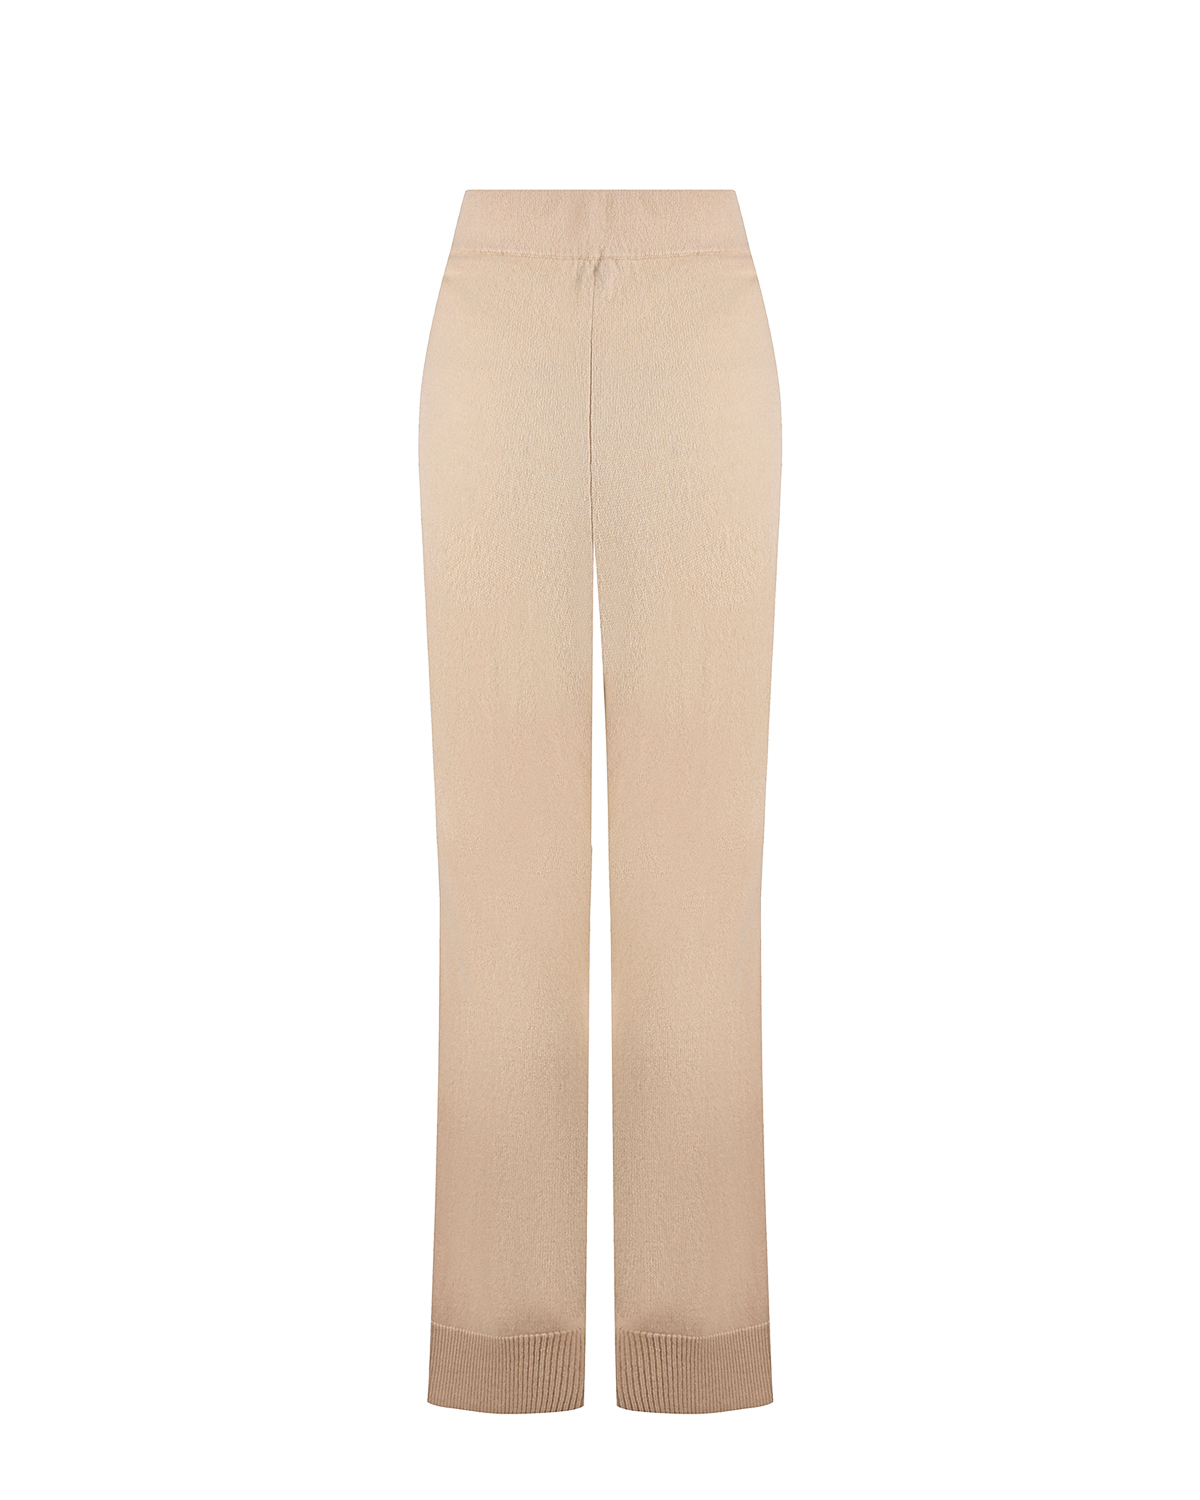 Бежевые брюки из кашемира FTC Cashmere, размер 40, цвет бежевый - фото 2